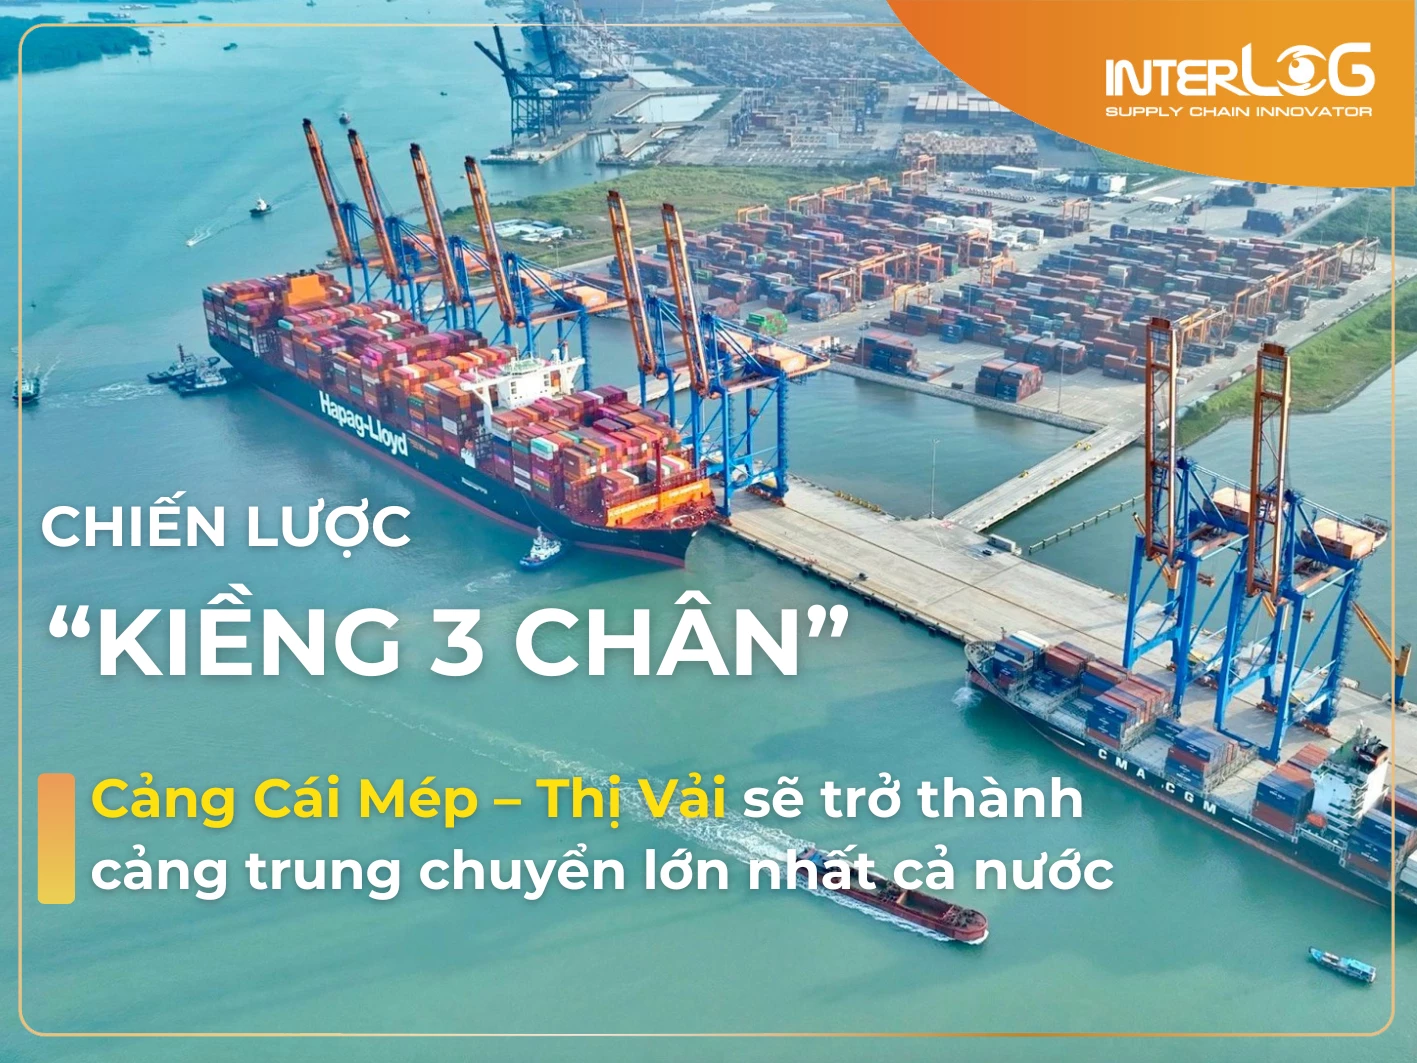 InterLOG đề xuất chiến lược “Kiềng 3 chân” cho đề án phát triển cảng quốc tế Cái Mép – Thị Vải thành cảng trung chuyển lớn nhất cả nước